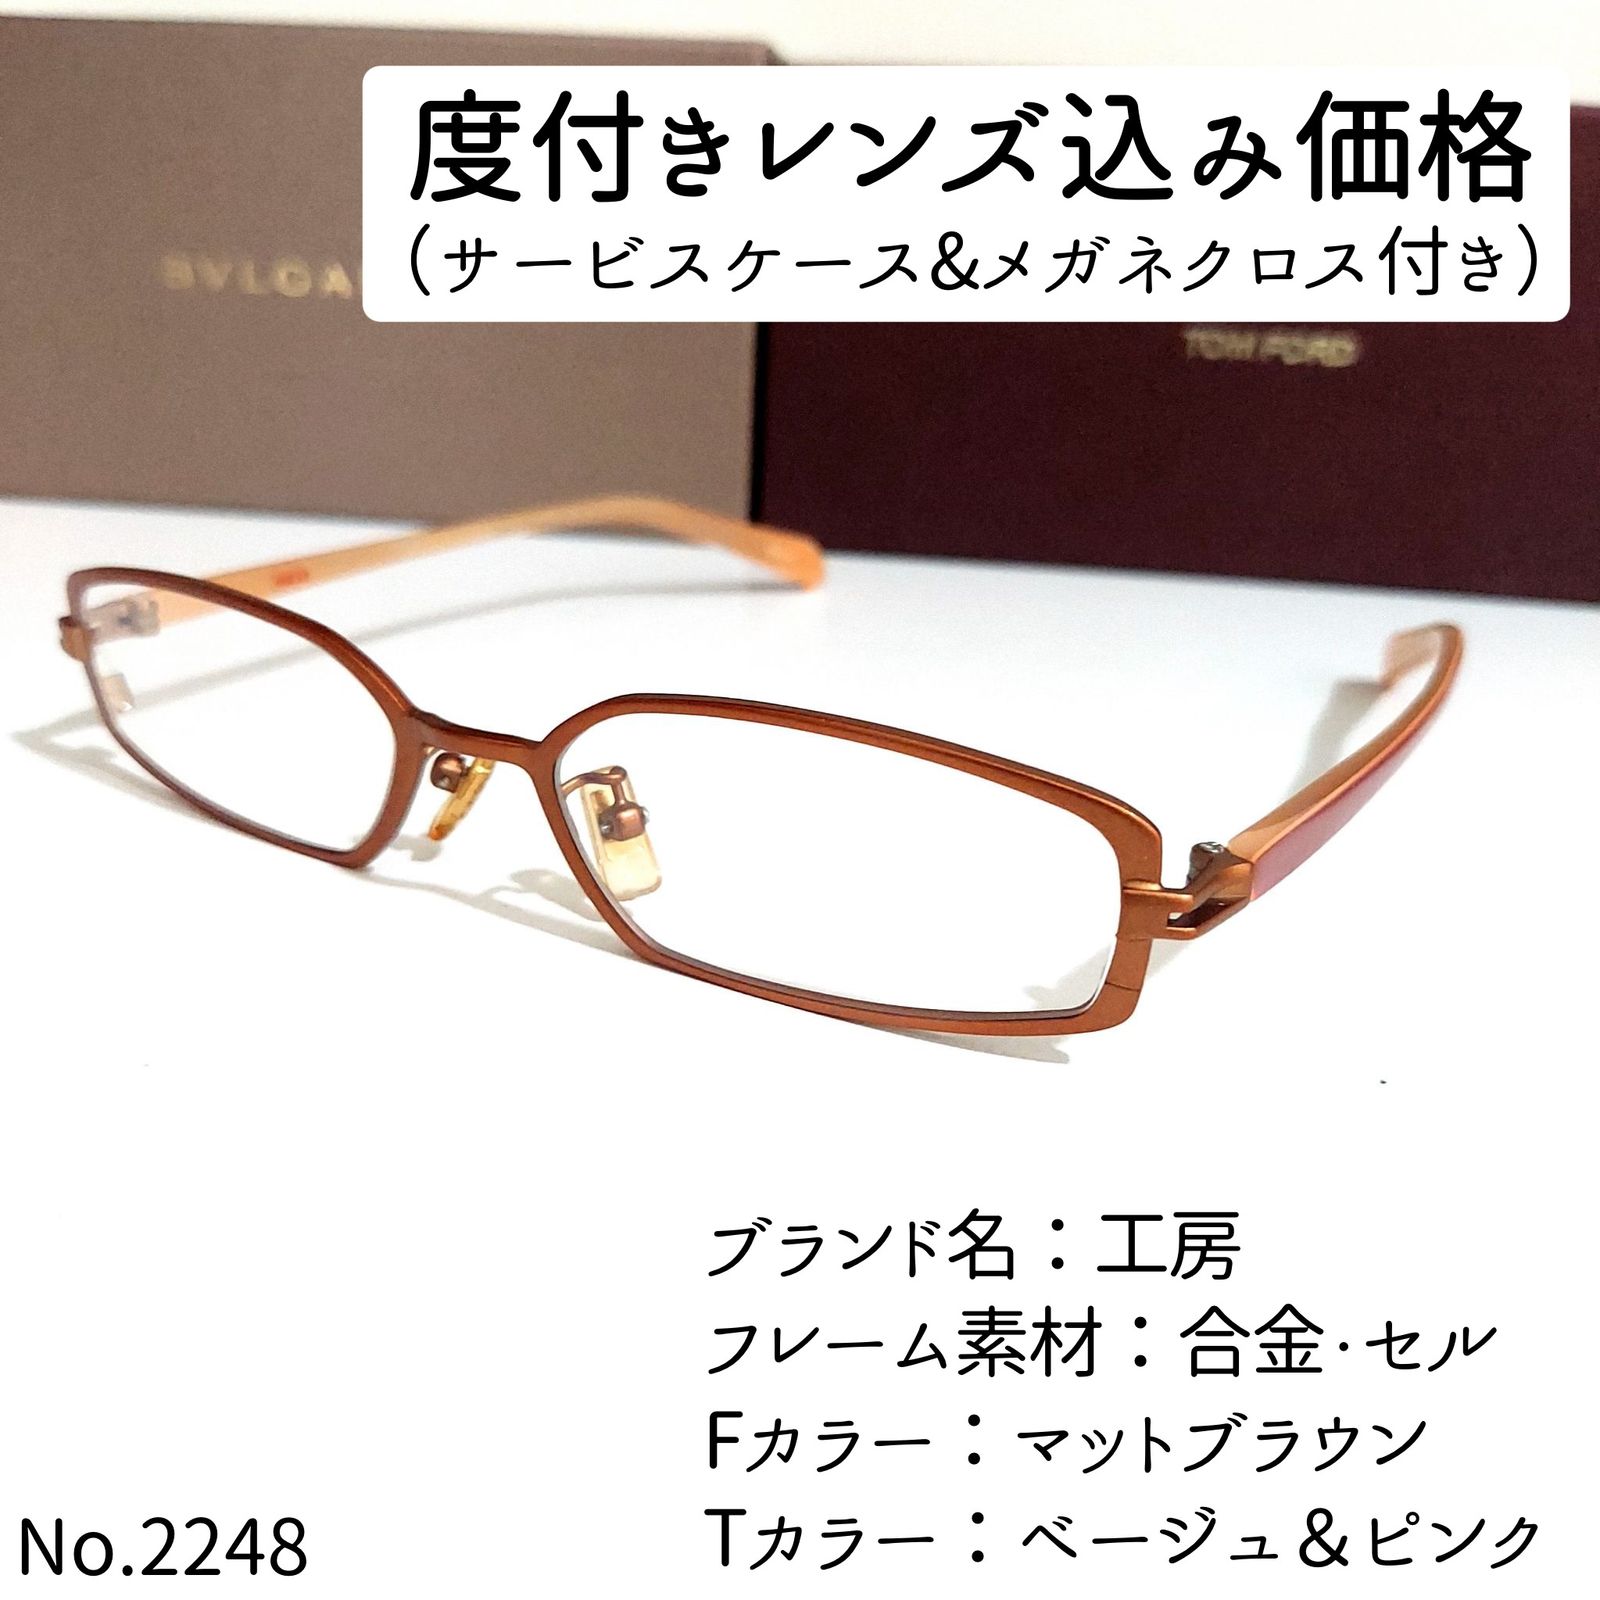 No.2286-メガネ ARX【フレームのみ価格】 - ファッション